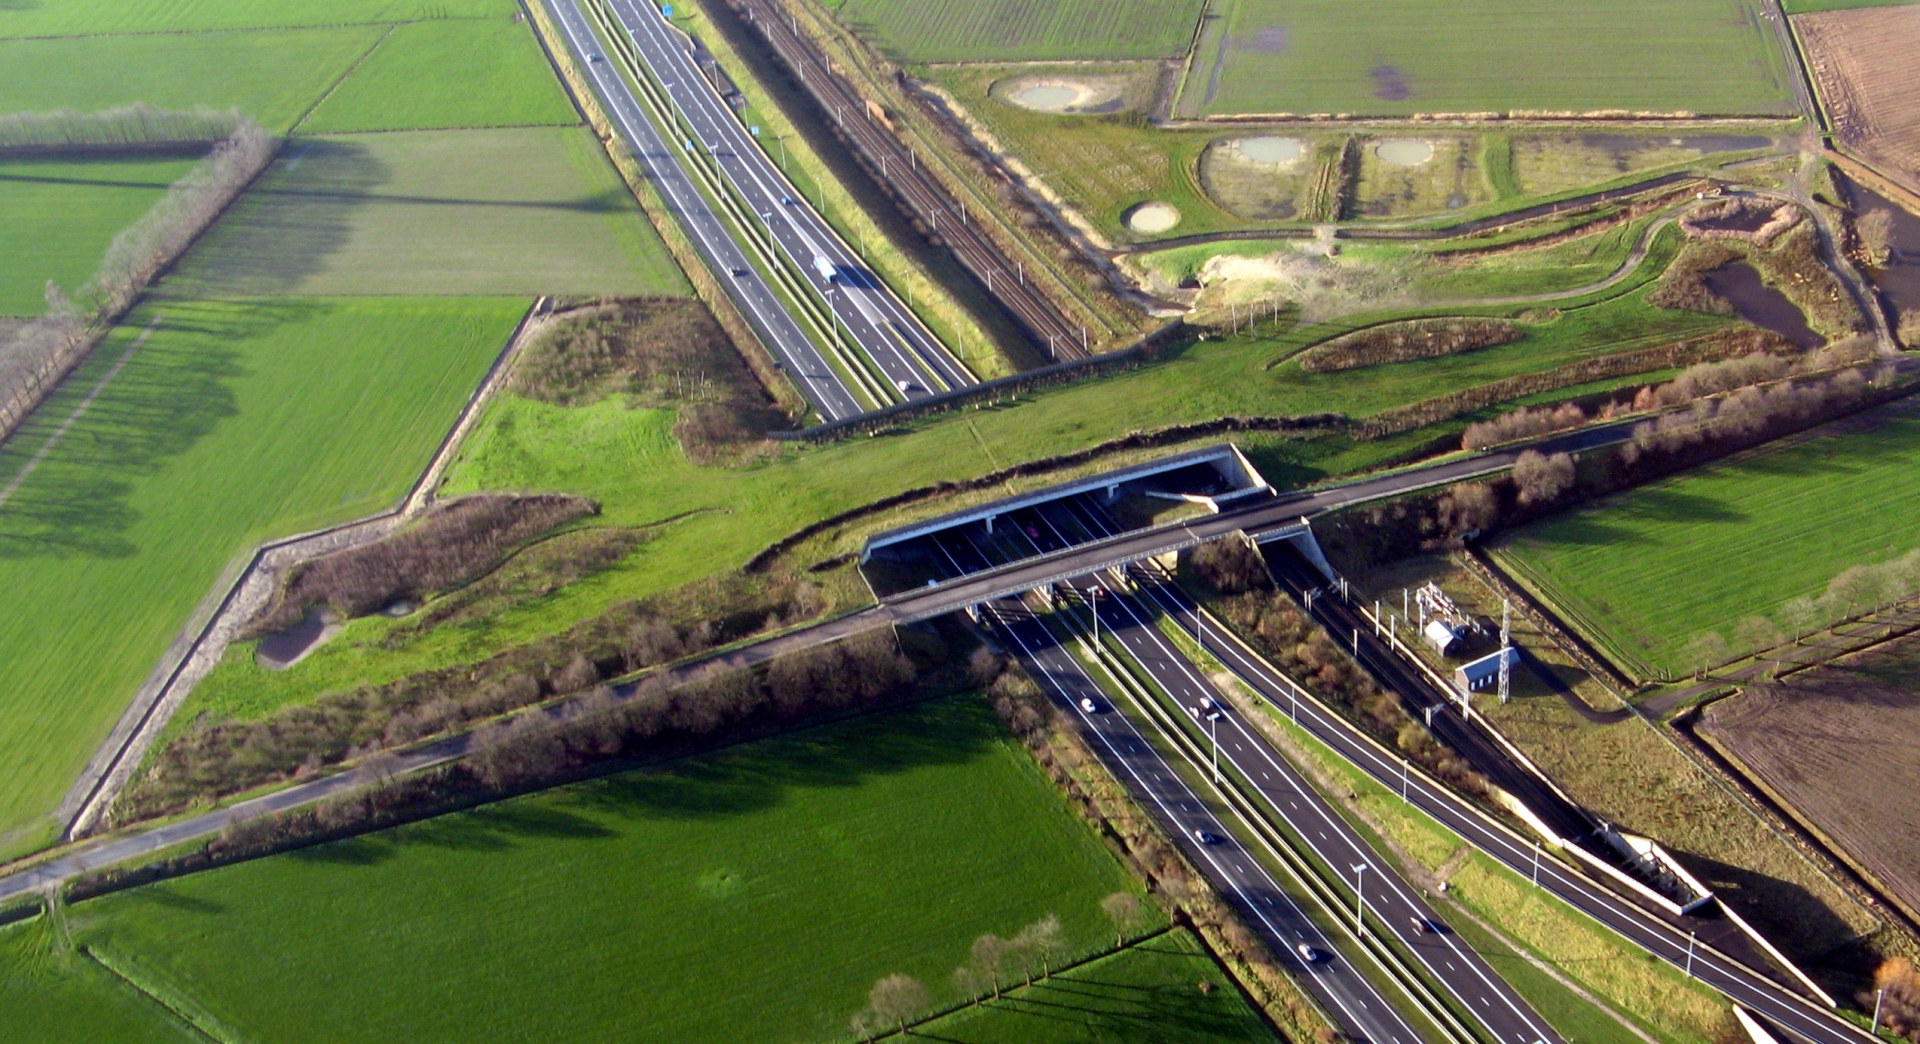 Ecoduct De munt - WUUSTWEZEL - Belgique